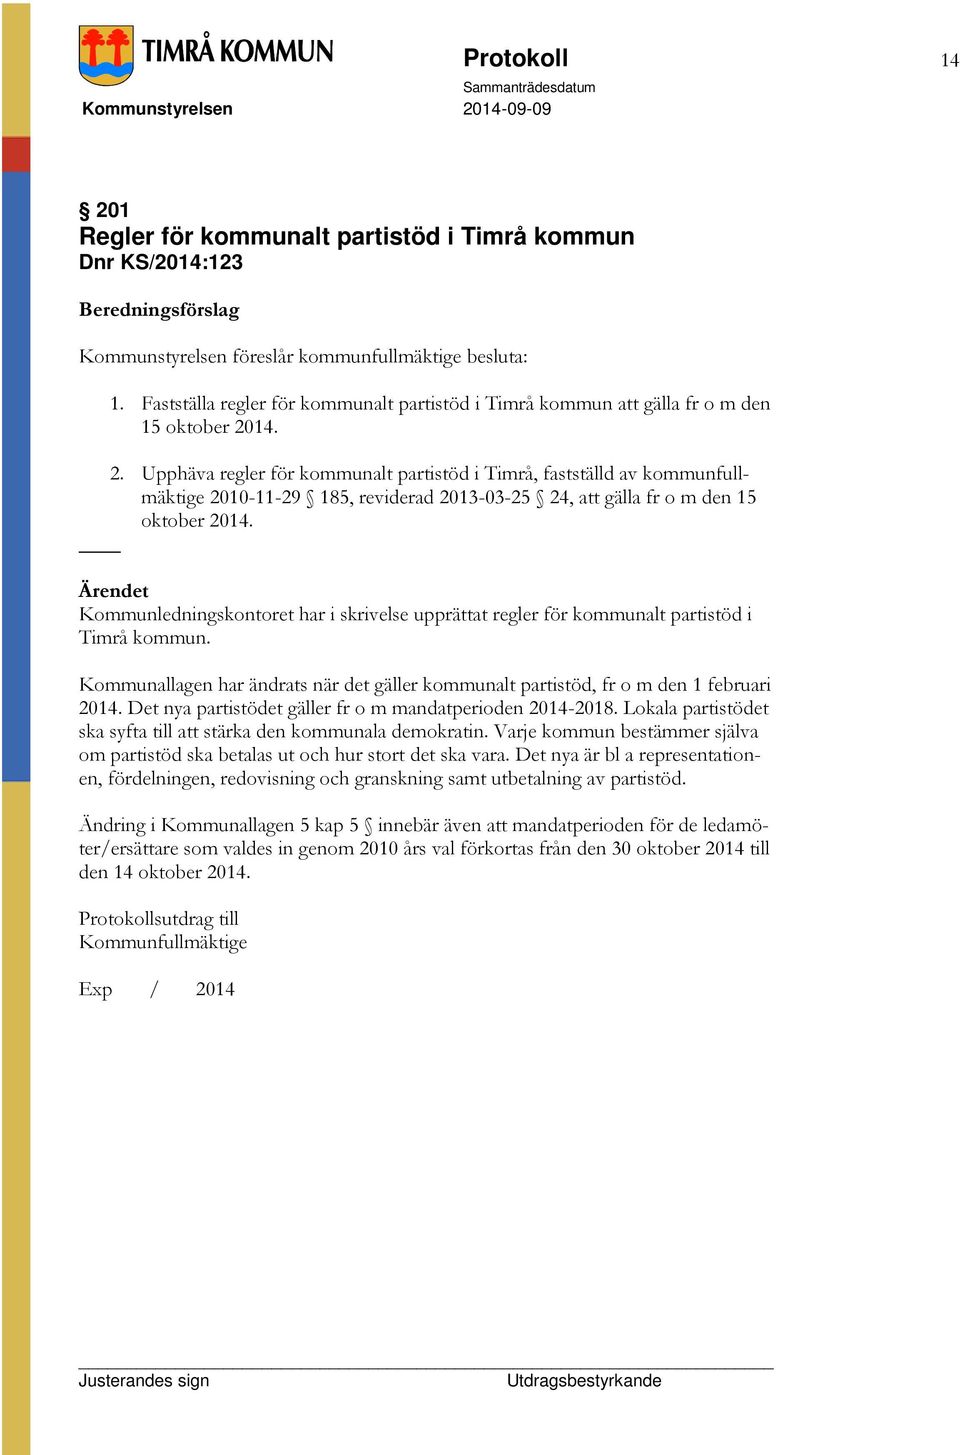 14. 2. Upphäva regler för kommunalt partistöd i Timrå, fastställd av kommunfullmäktige 2010-11-29 185, reviderad 2013-03-25 24, att gälla fr o m den 15 oktober 2014.